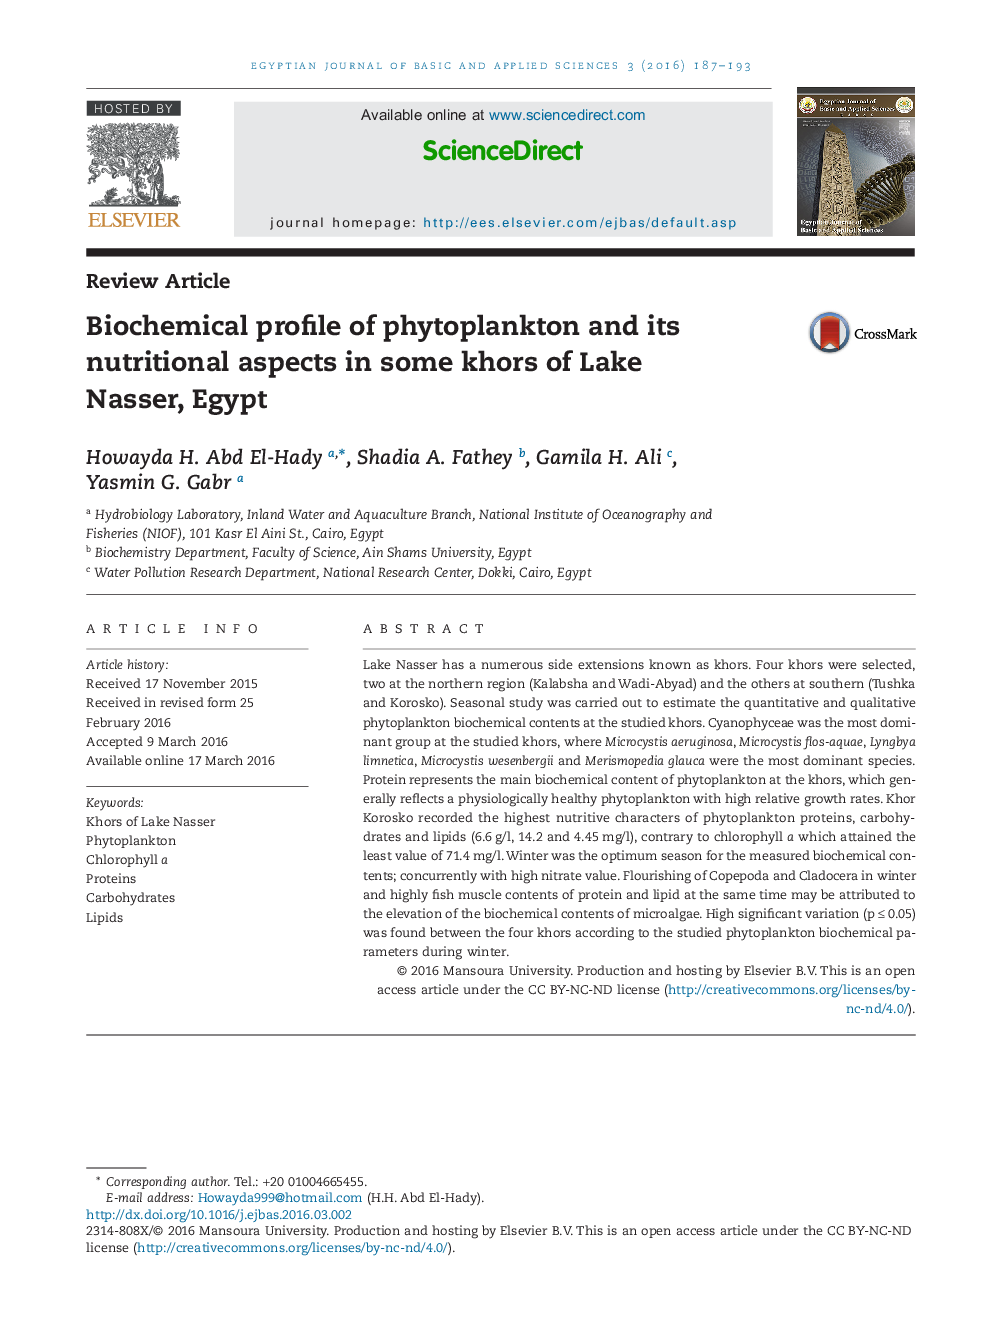 نمایه بیوشیمی فتوپلانکتون و جنبه ها (ابعاد) مغذی اش در برخی از Khor های دریاچه ناصر ، مصر